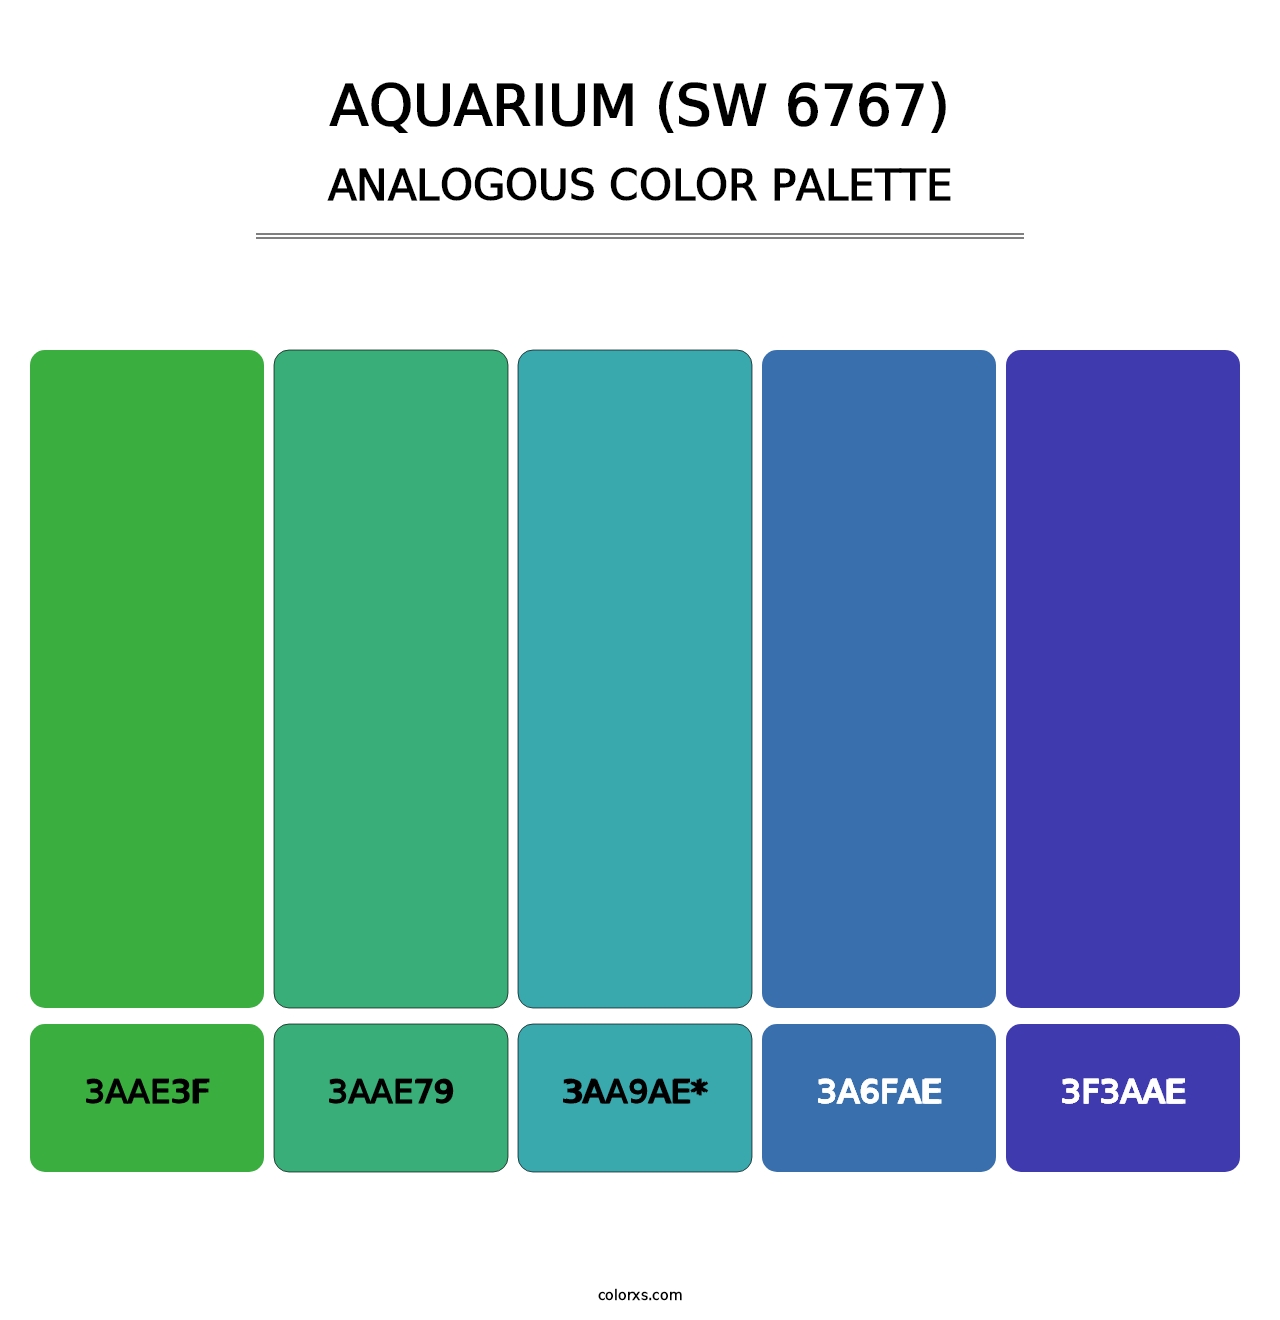 Aquarium (SW 6767) - Analogous Color Palette